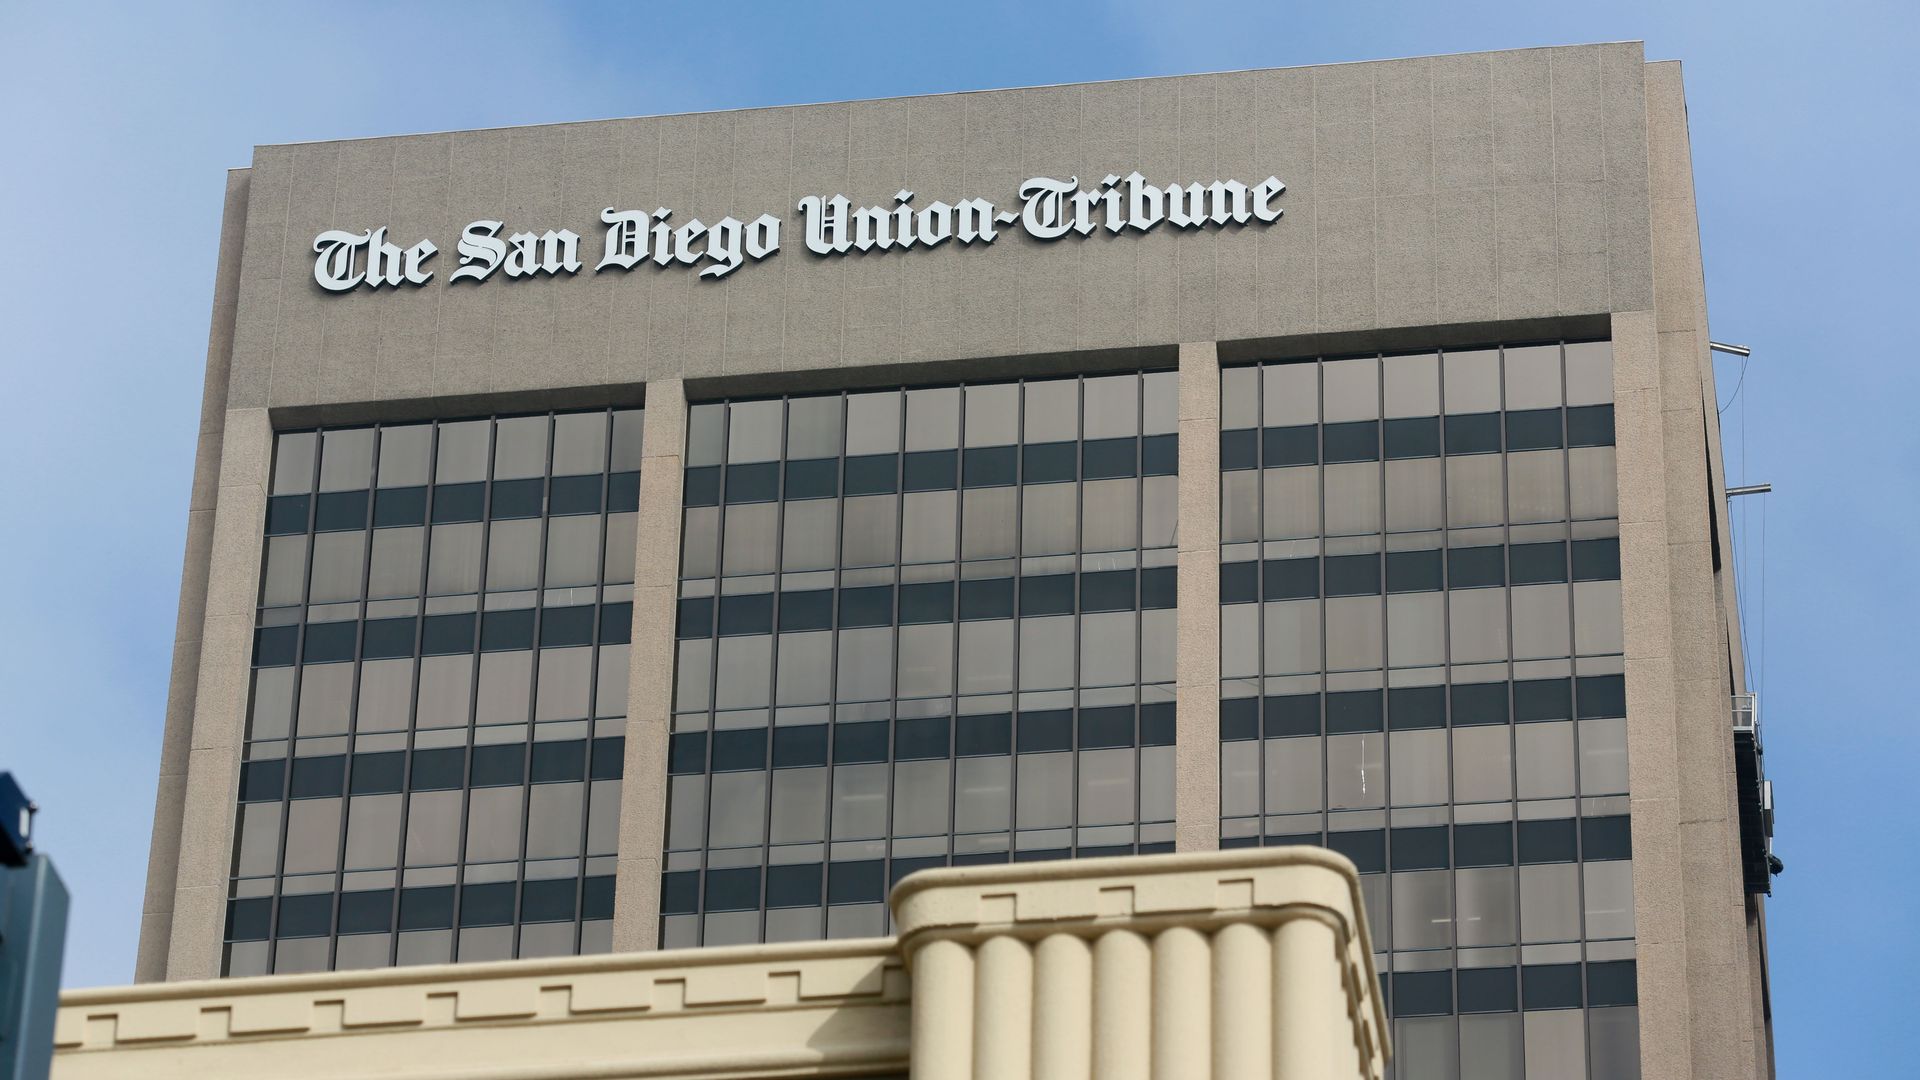 The San Diego Union-Tribune building in downtown San Diego.